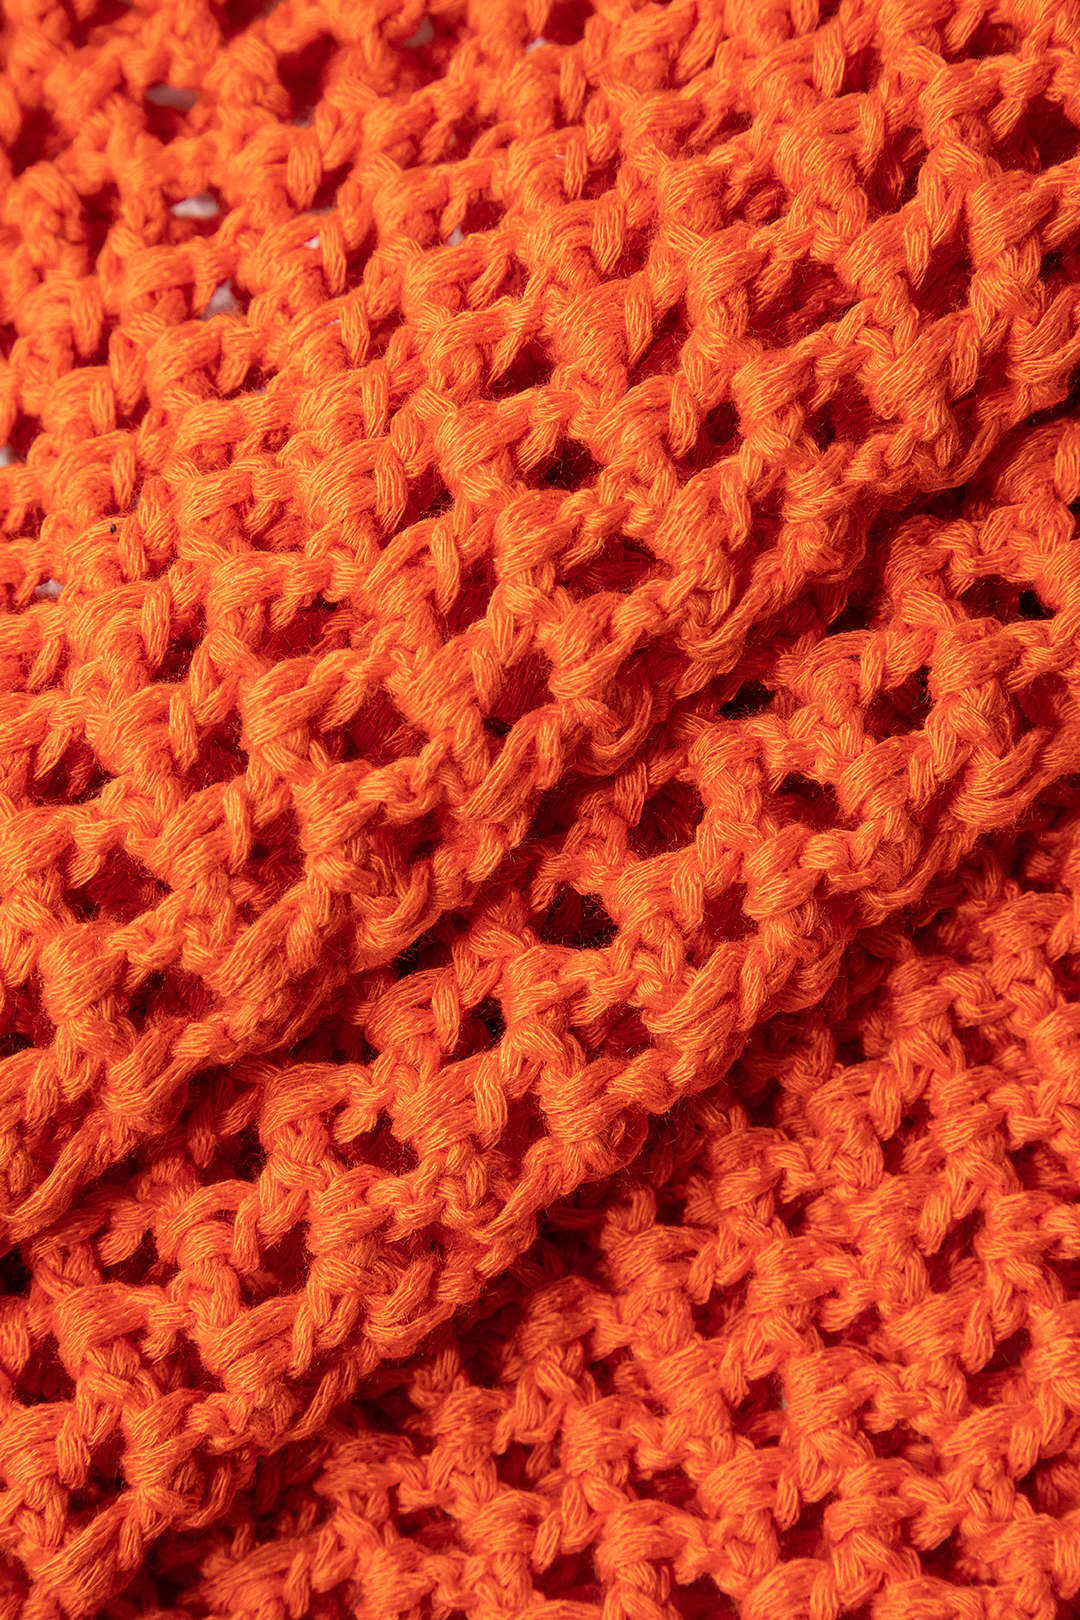 Crochet Halter Backless Mini Dress